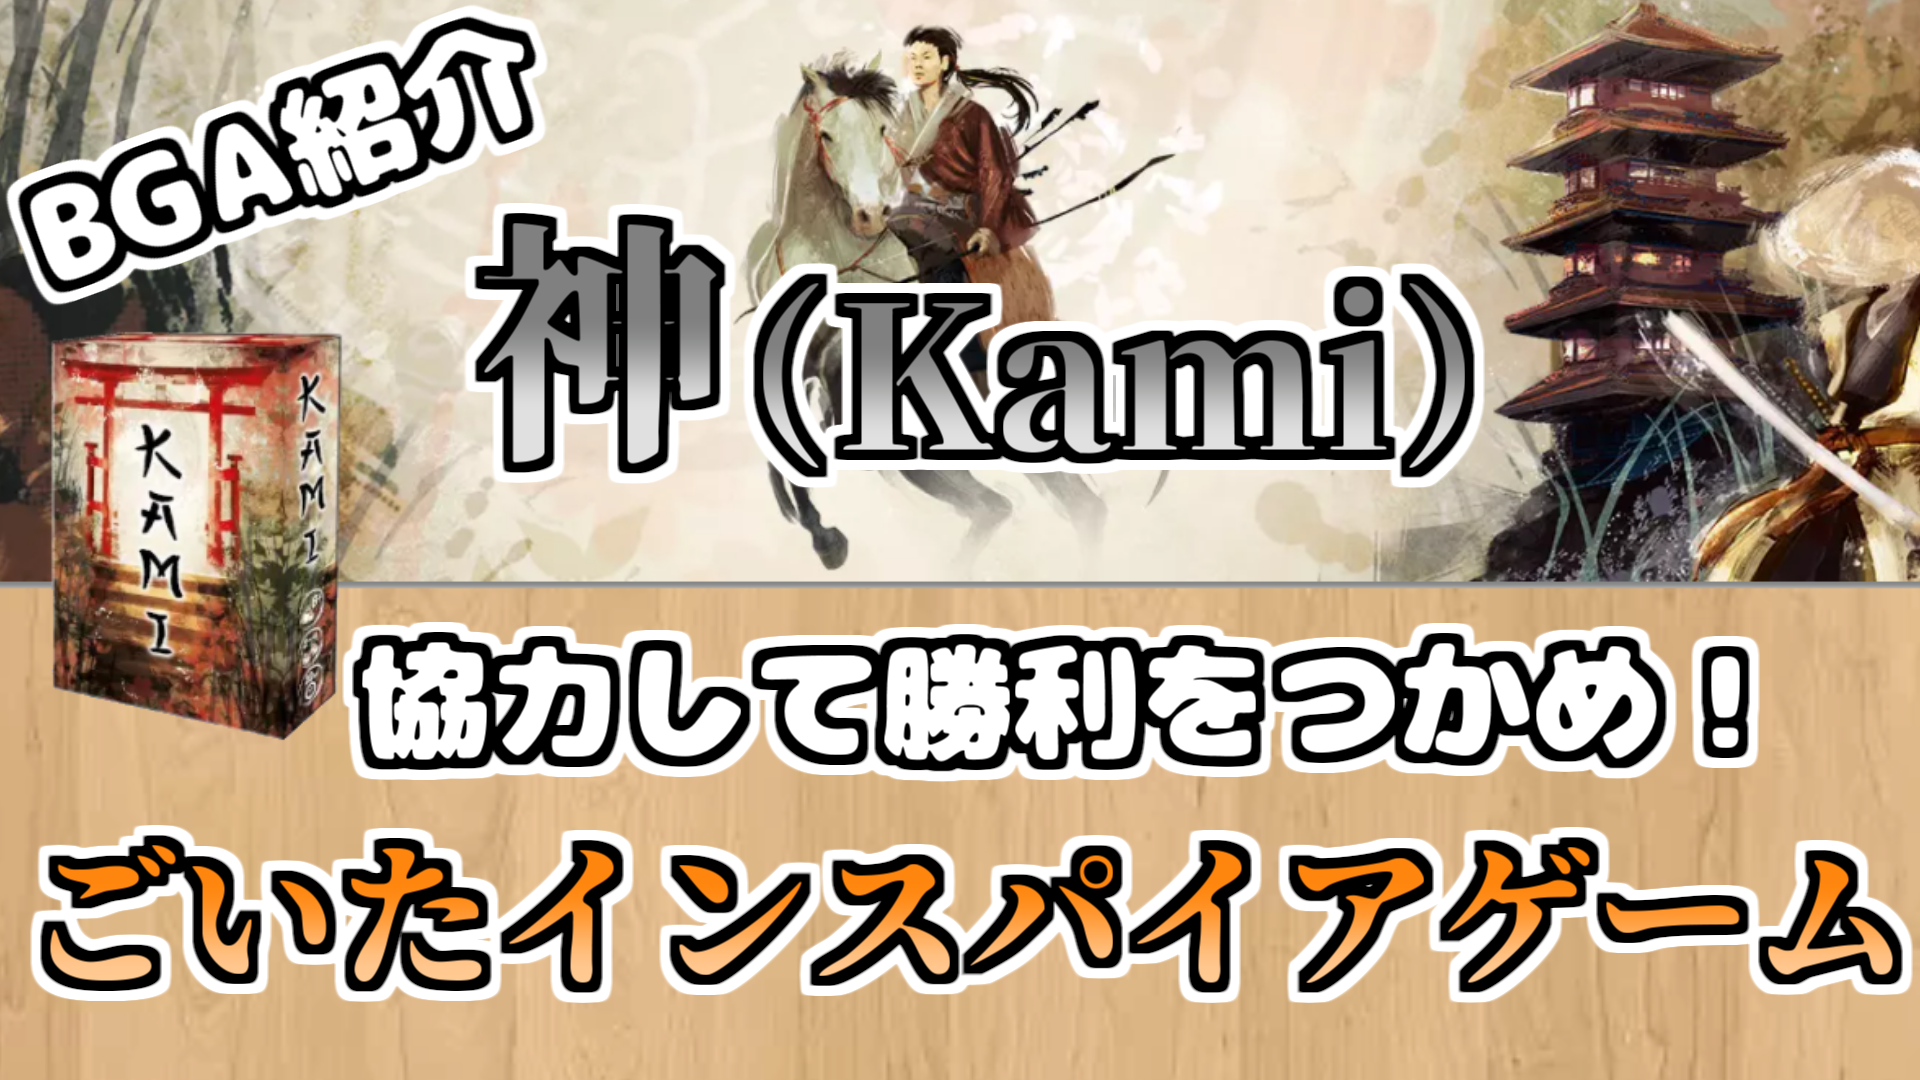 ボードゲームアリーナ ルール解説 神 Kami 協力して勝利をつかめ ごいたインスパイアゲーム なまこの日々日記